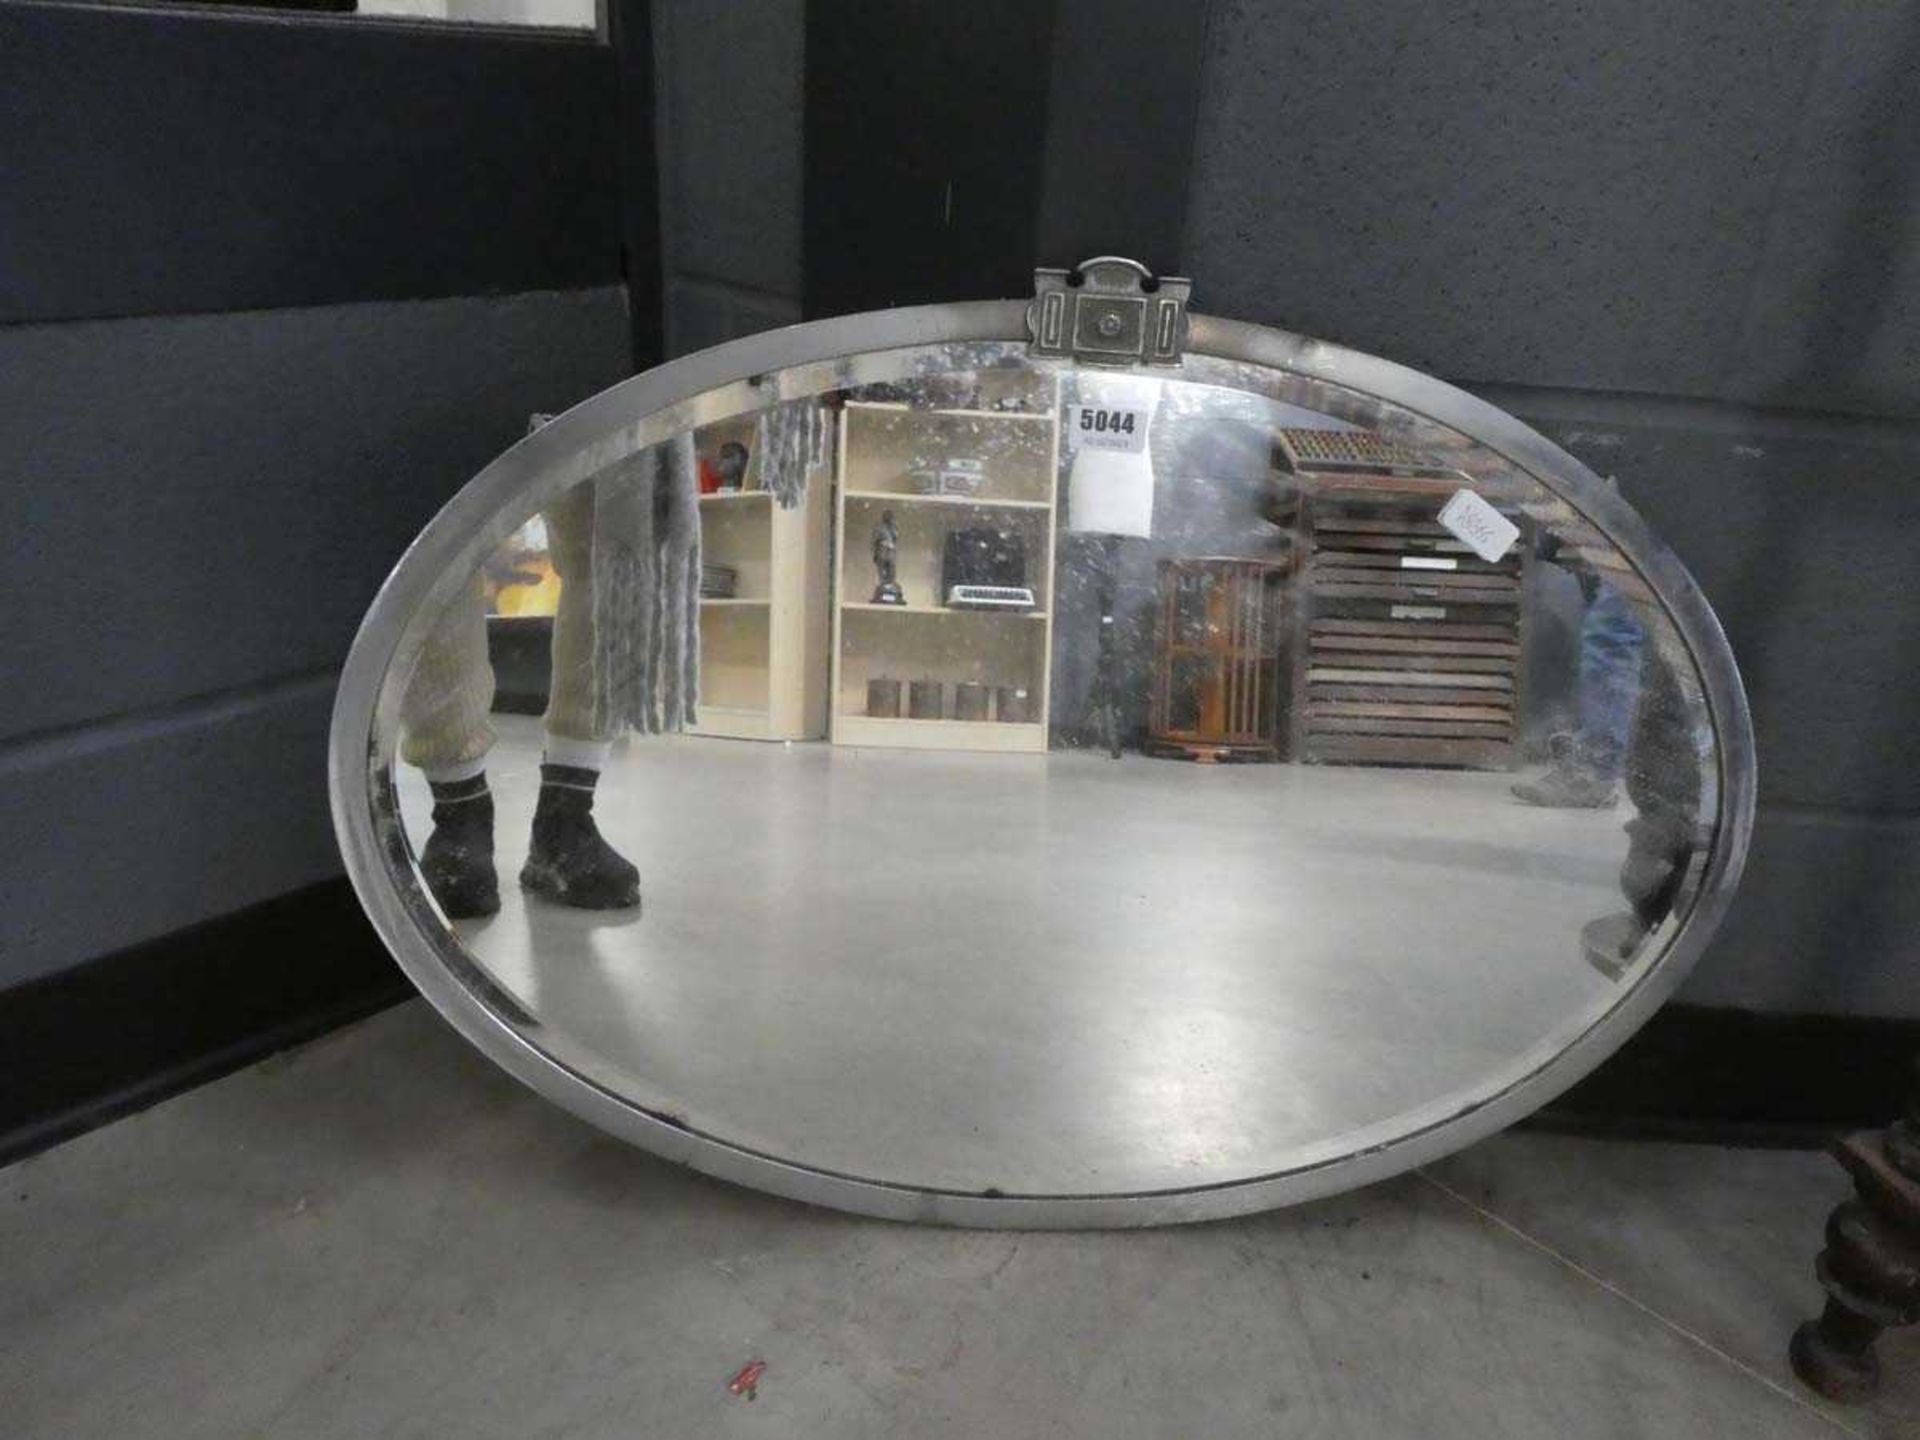 Oval bevelled mirror in chromed frame